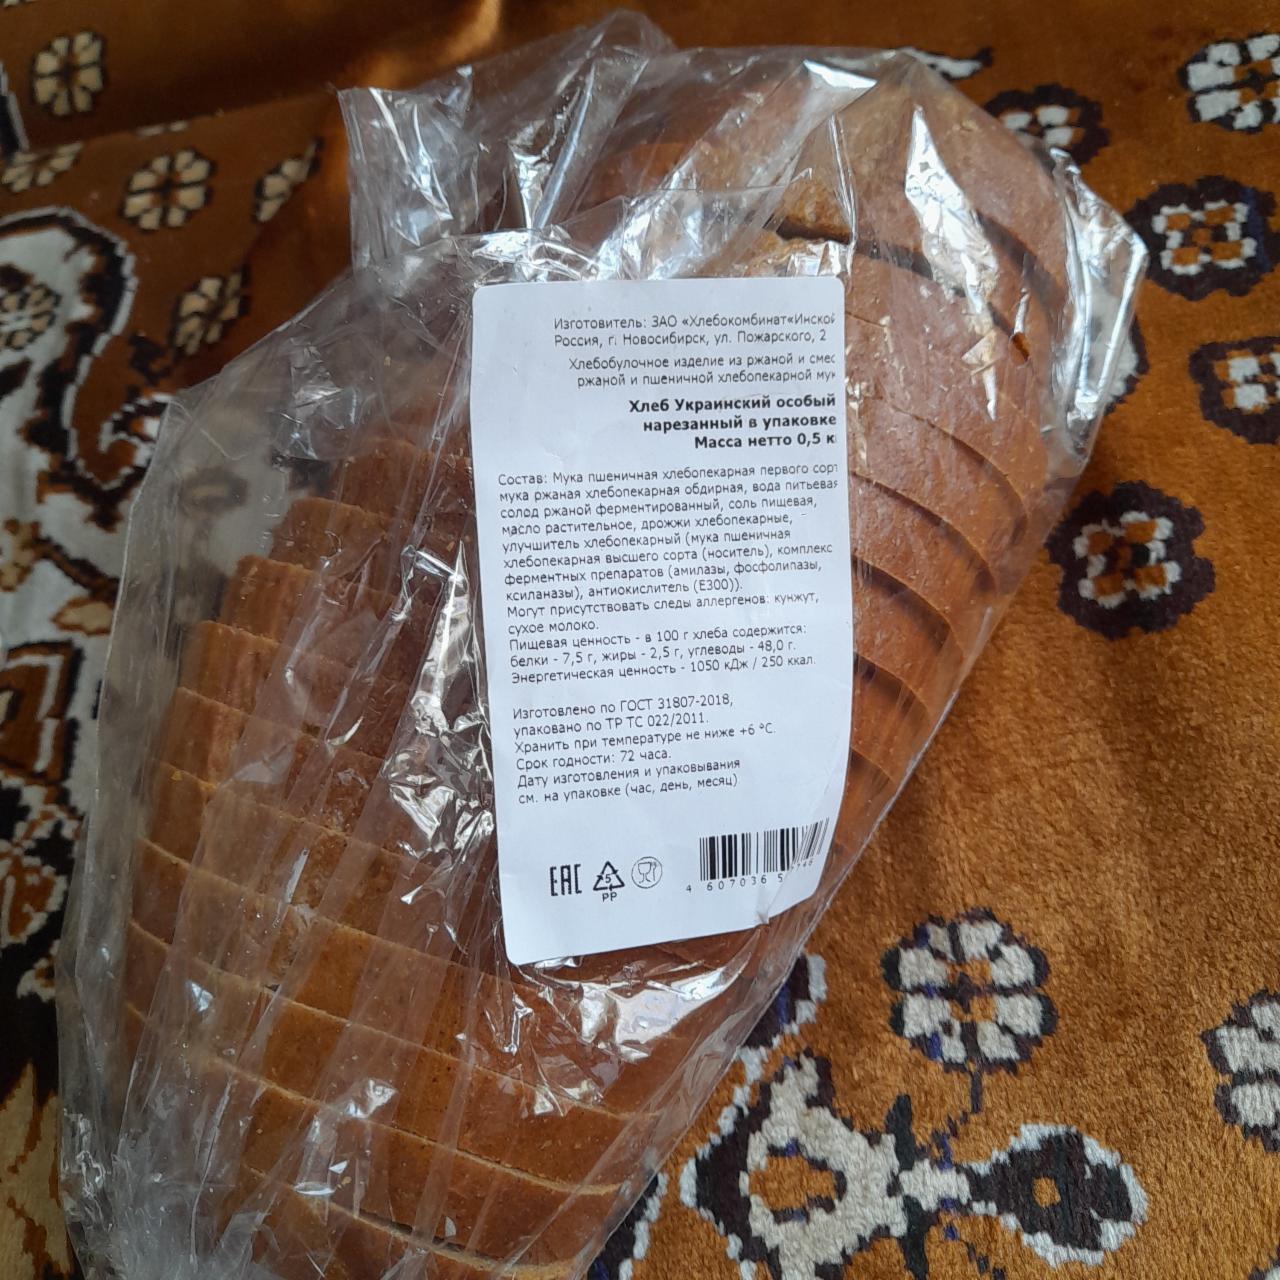 Фото - Хлеб Украинский особый нарезанный в упаковке Хлебокомбинат Инской